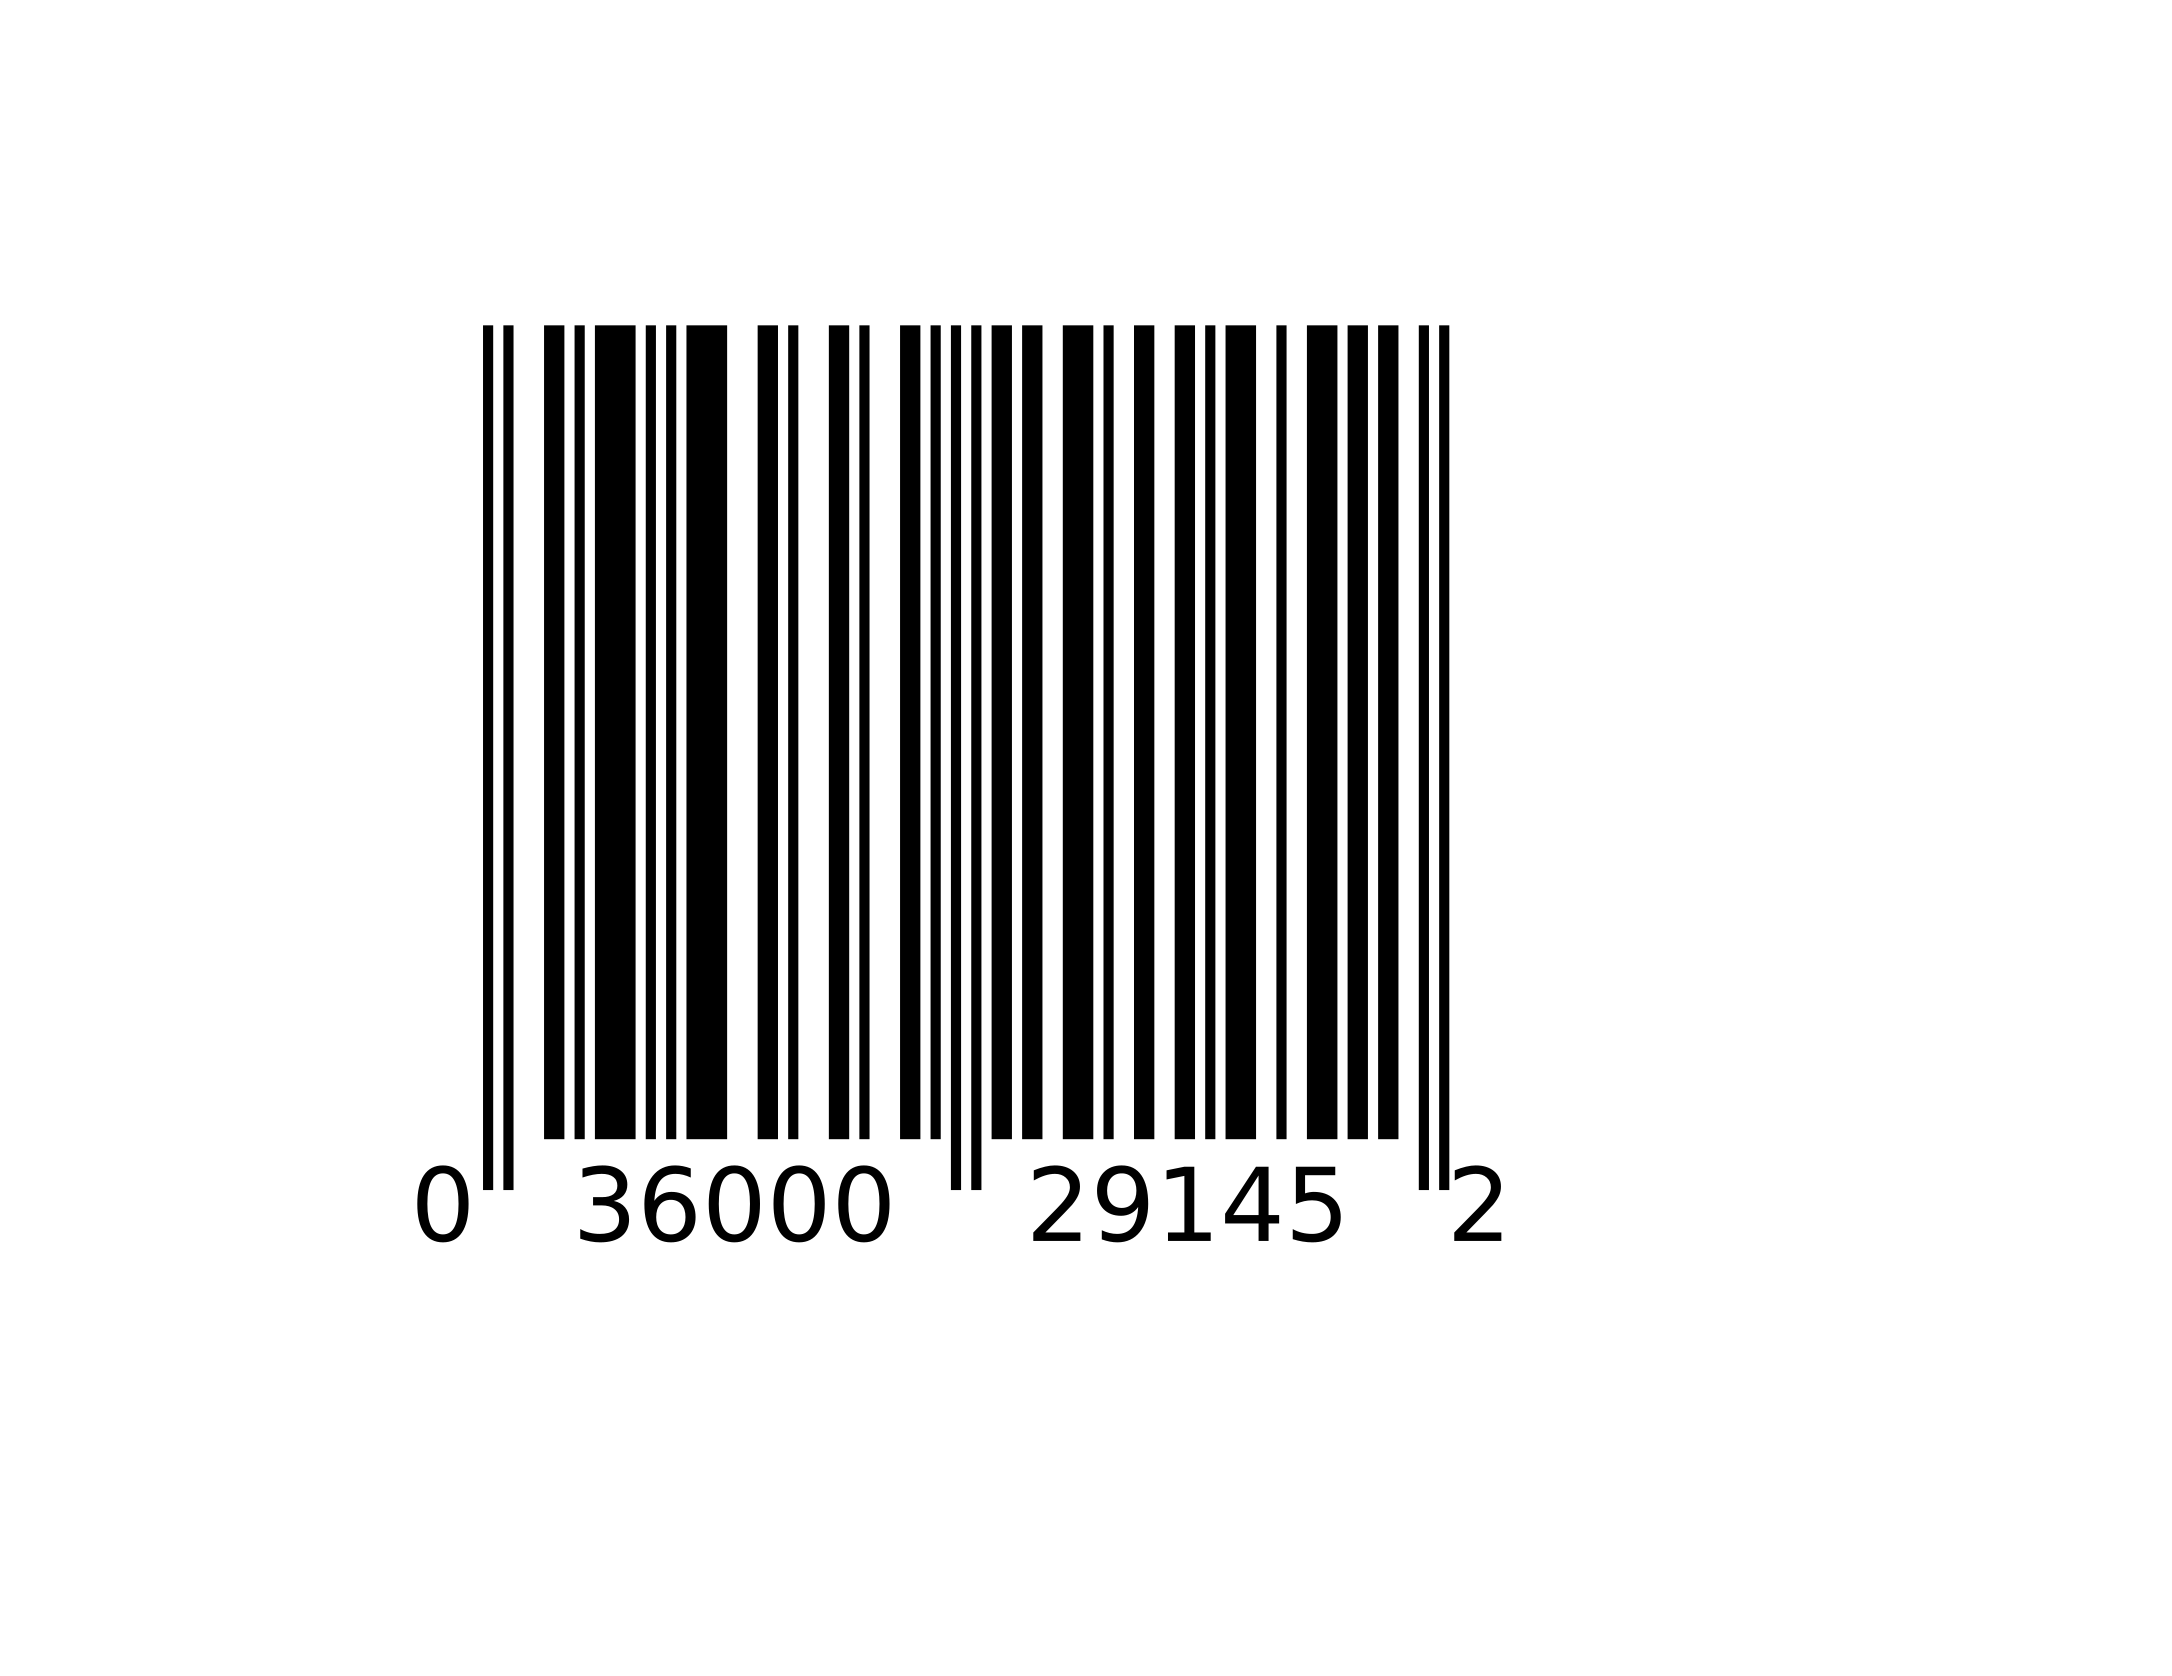 barcode-1